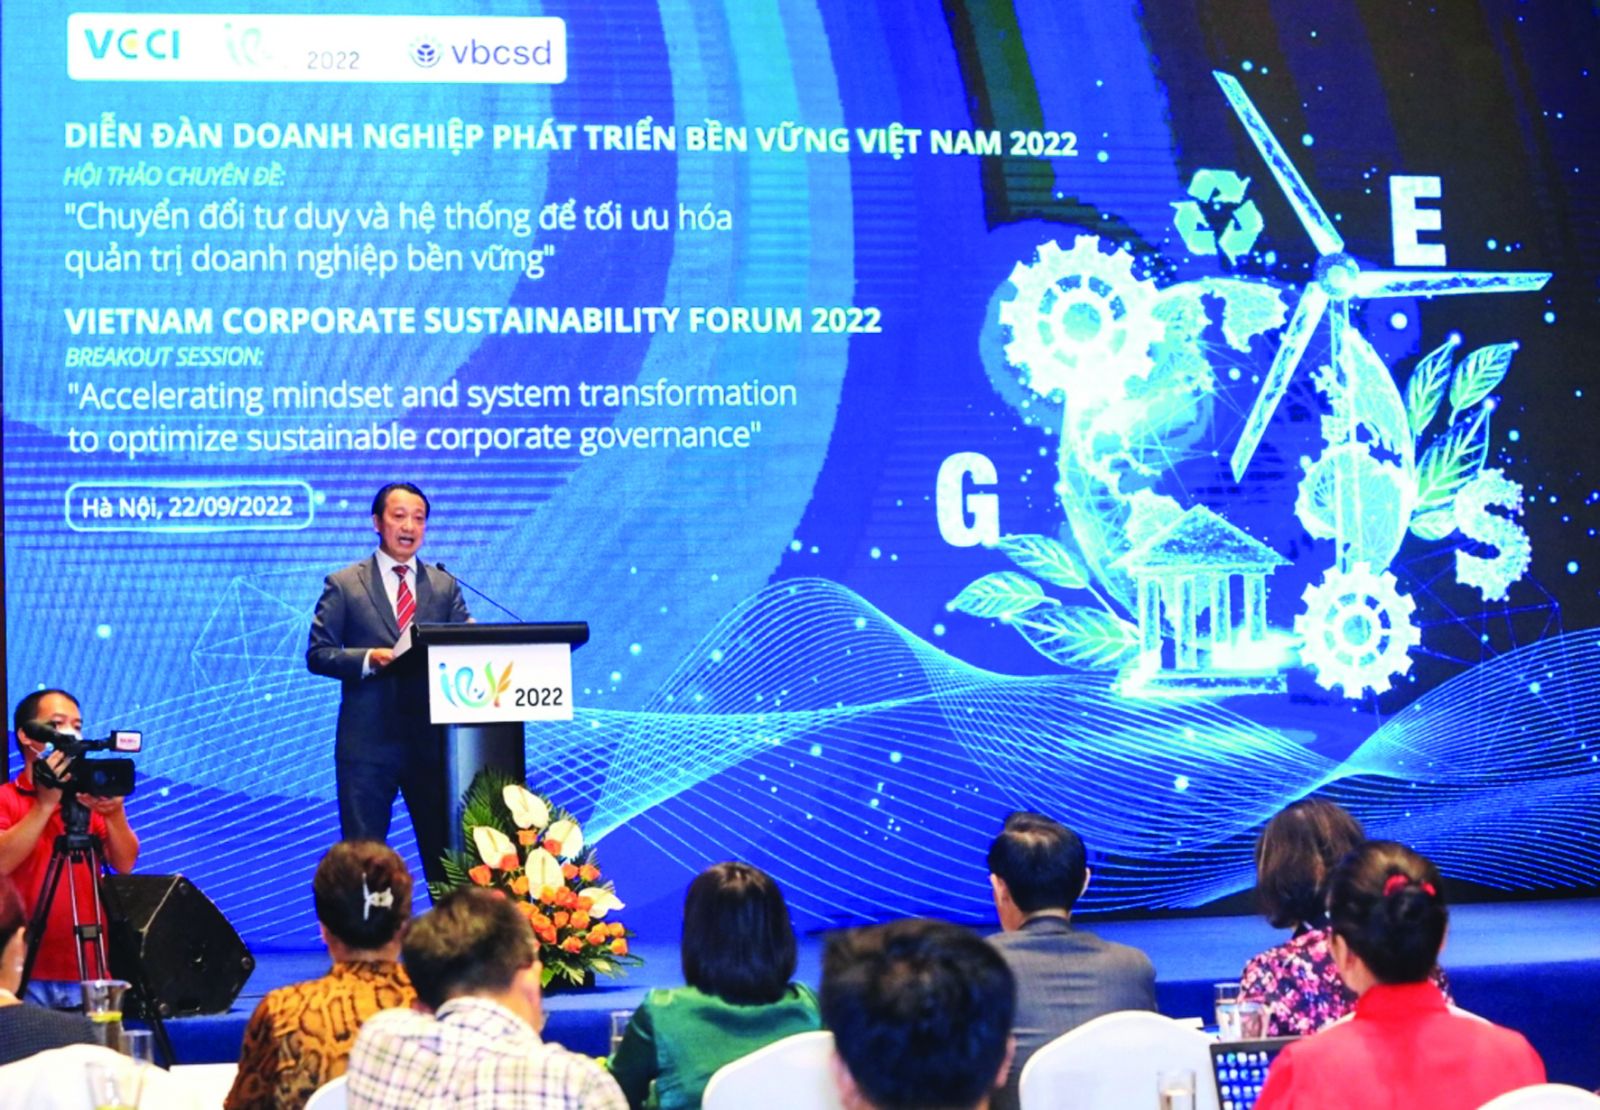  Hội thảo chuyên đề “Chuyển đổi tư duy và hệ thống để tối ưu hóa quản trị doanh nghiệp bền vững” do Hội đồng Doanh nghiệp vì sự Phát triển bền vững Việt Nam (VCCI-VBCSD) tổ chức.